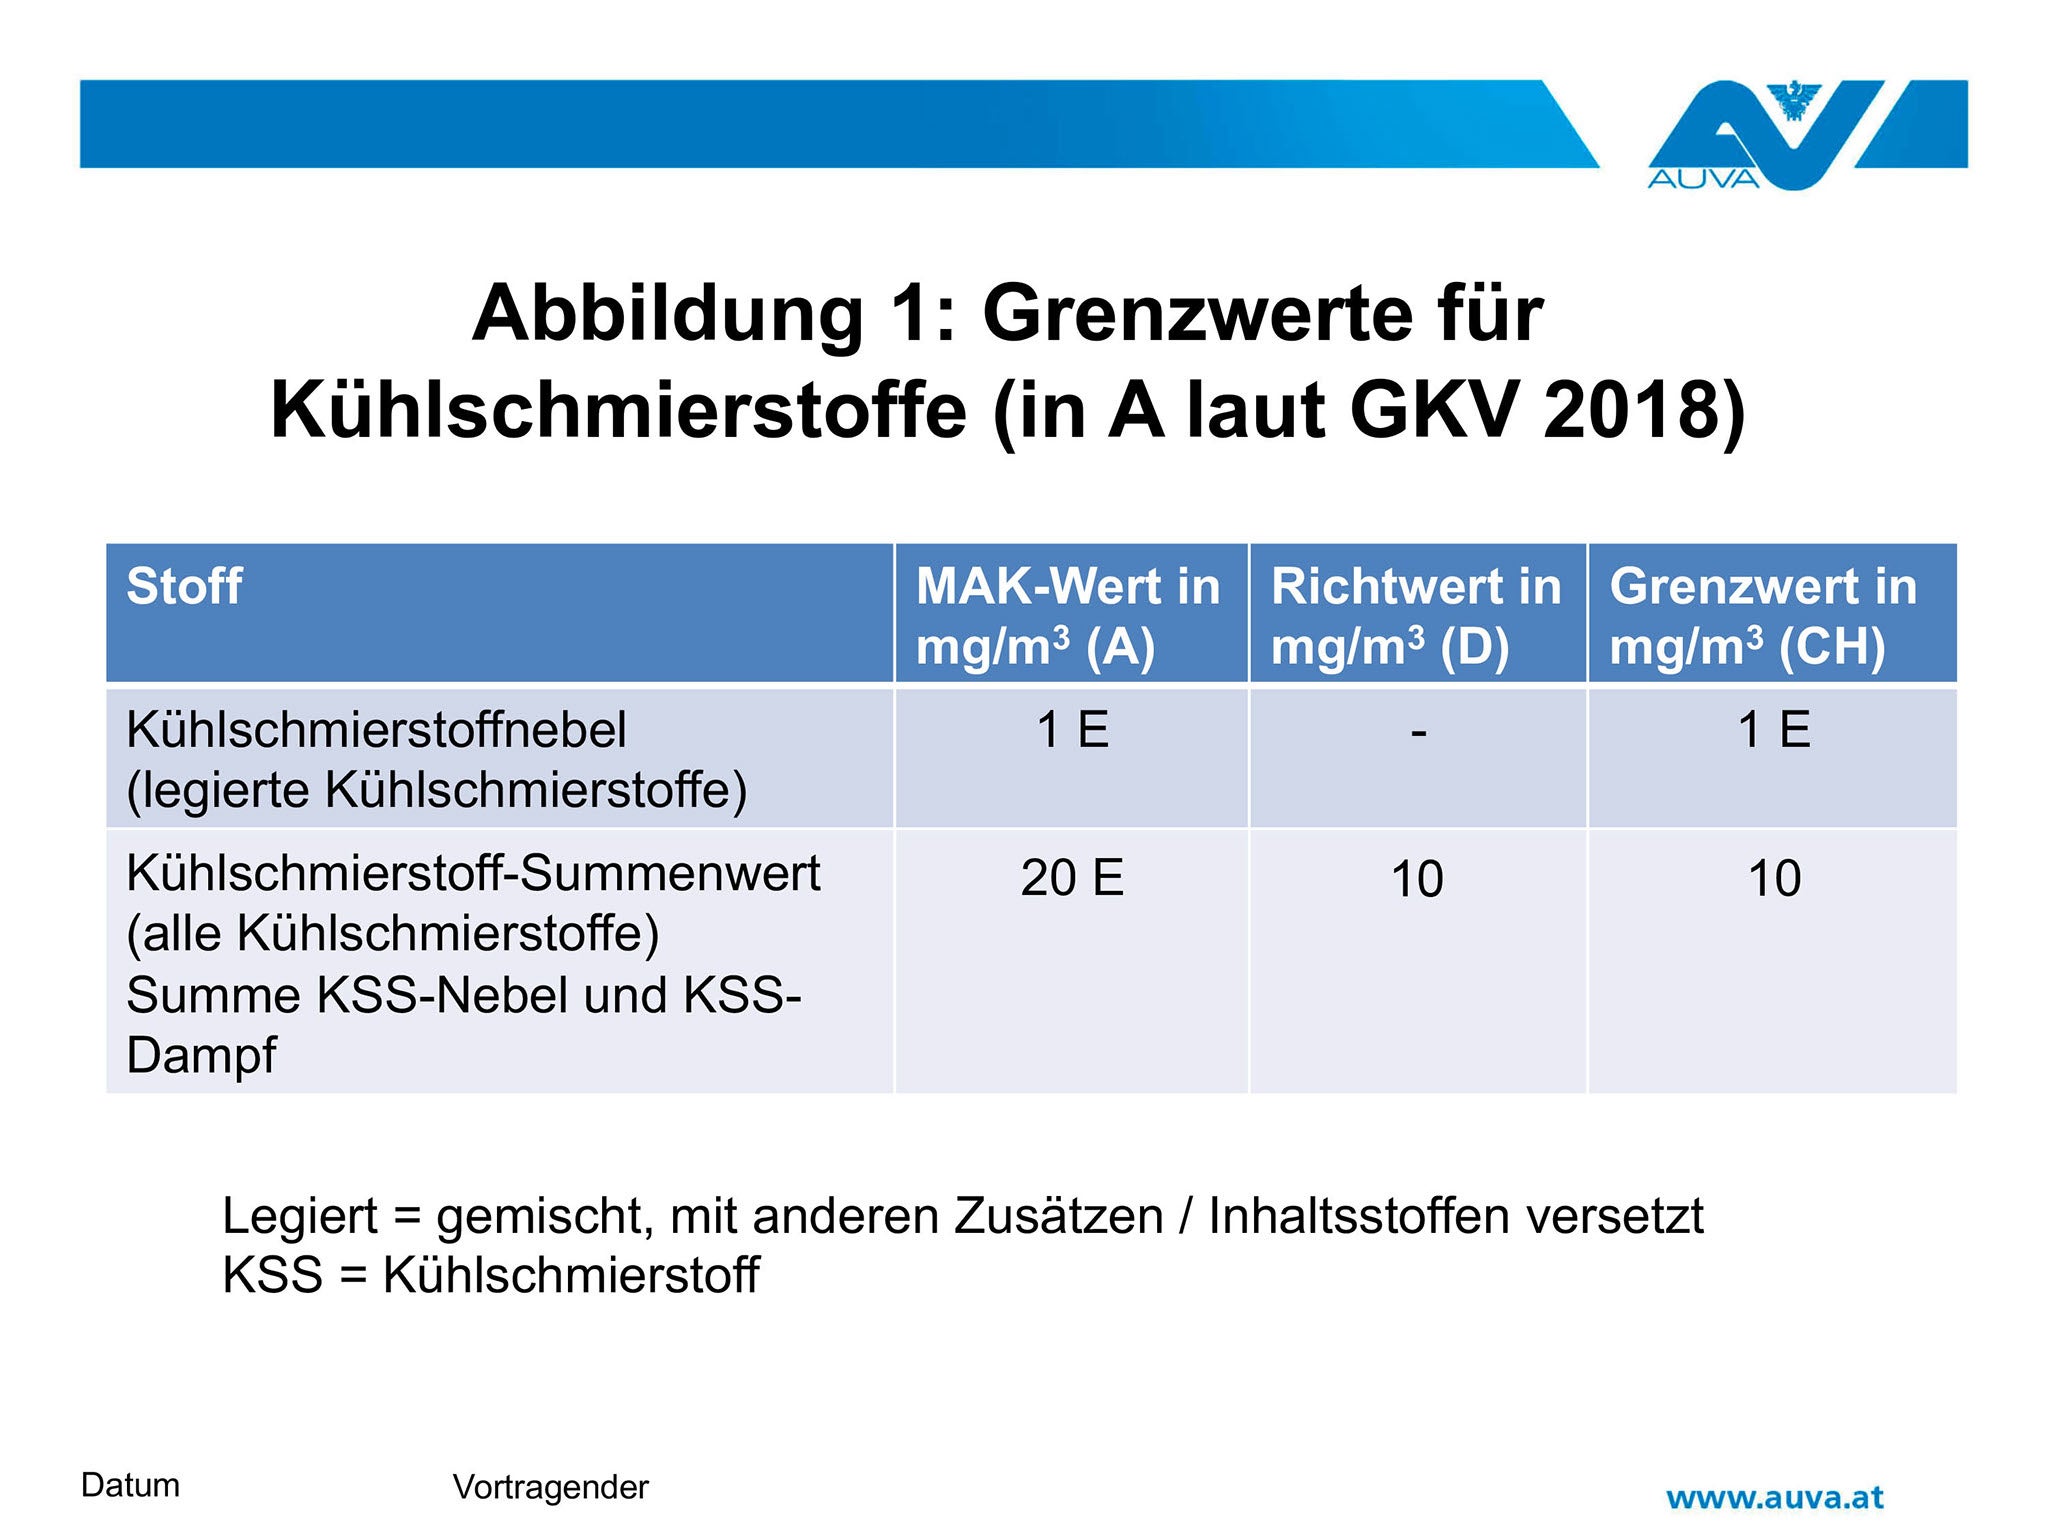 Abbildung 1: Grenzwerte für Kühlschmierstoffe (in A laut GKV 2018)